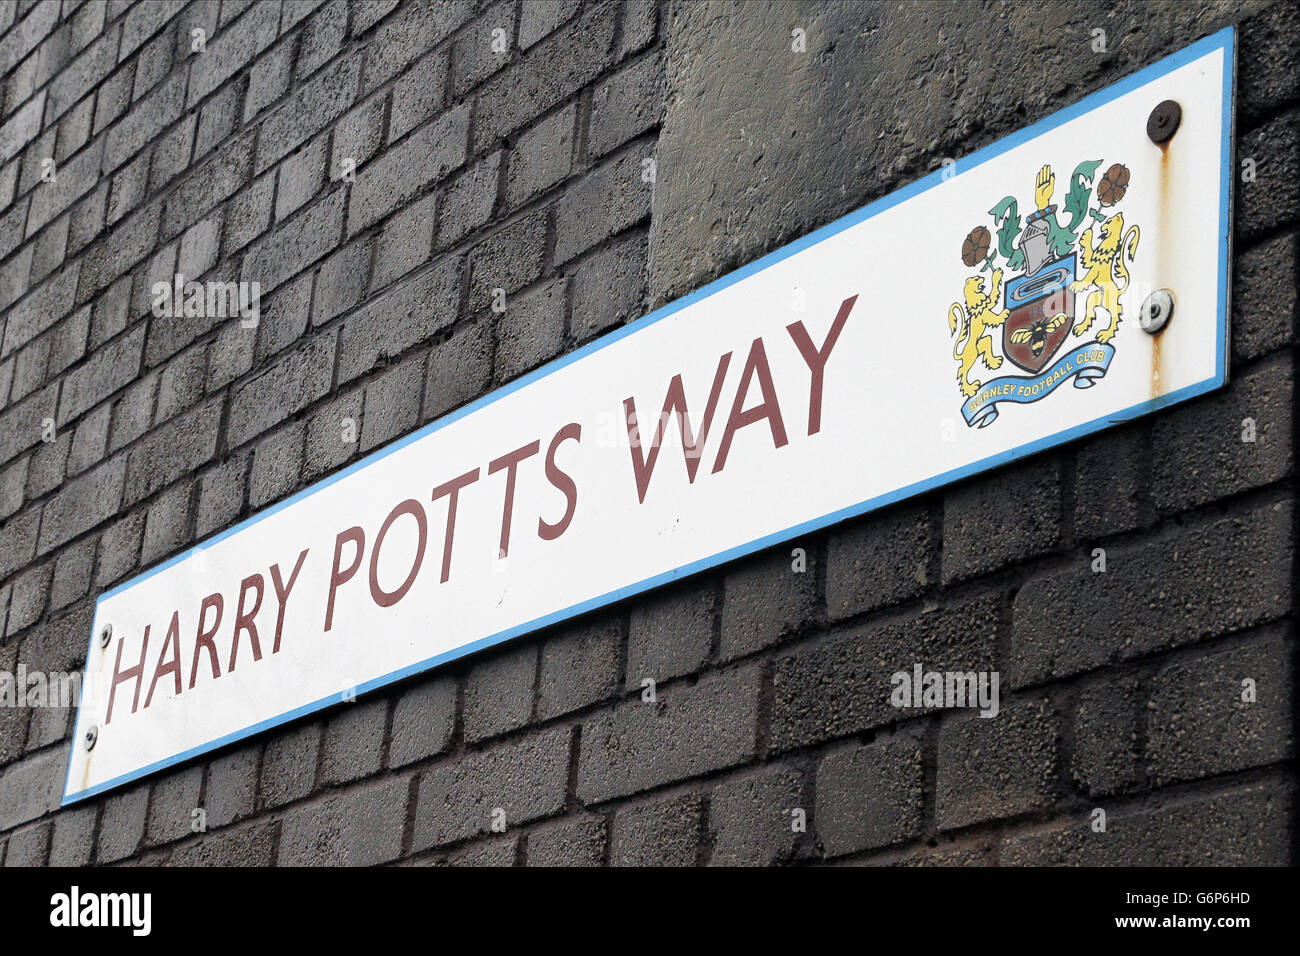 Fußball - Sky Bet Championship - Burnley / Huddersfield Town - Turf Moor. Eine detaillierte Ansicht eines Verkehrsschildes für das Harry Potts Way nea Turf Moor Stadion. Stockfoto